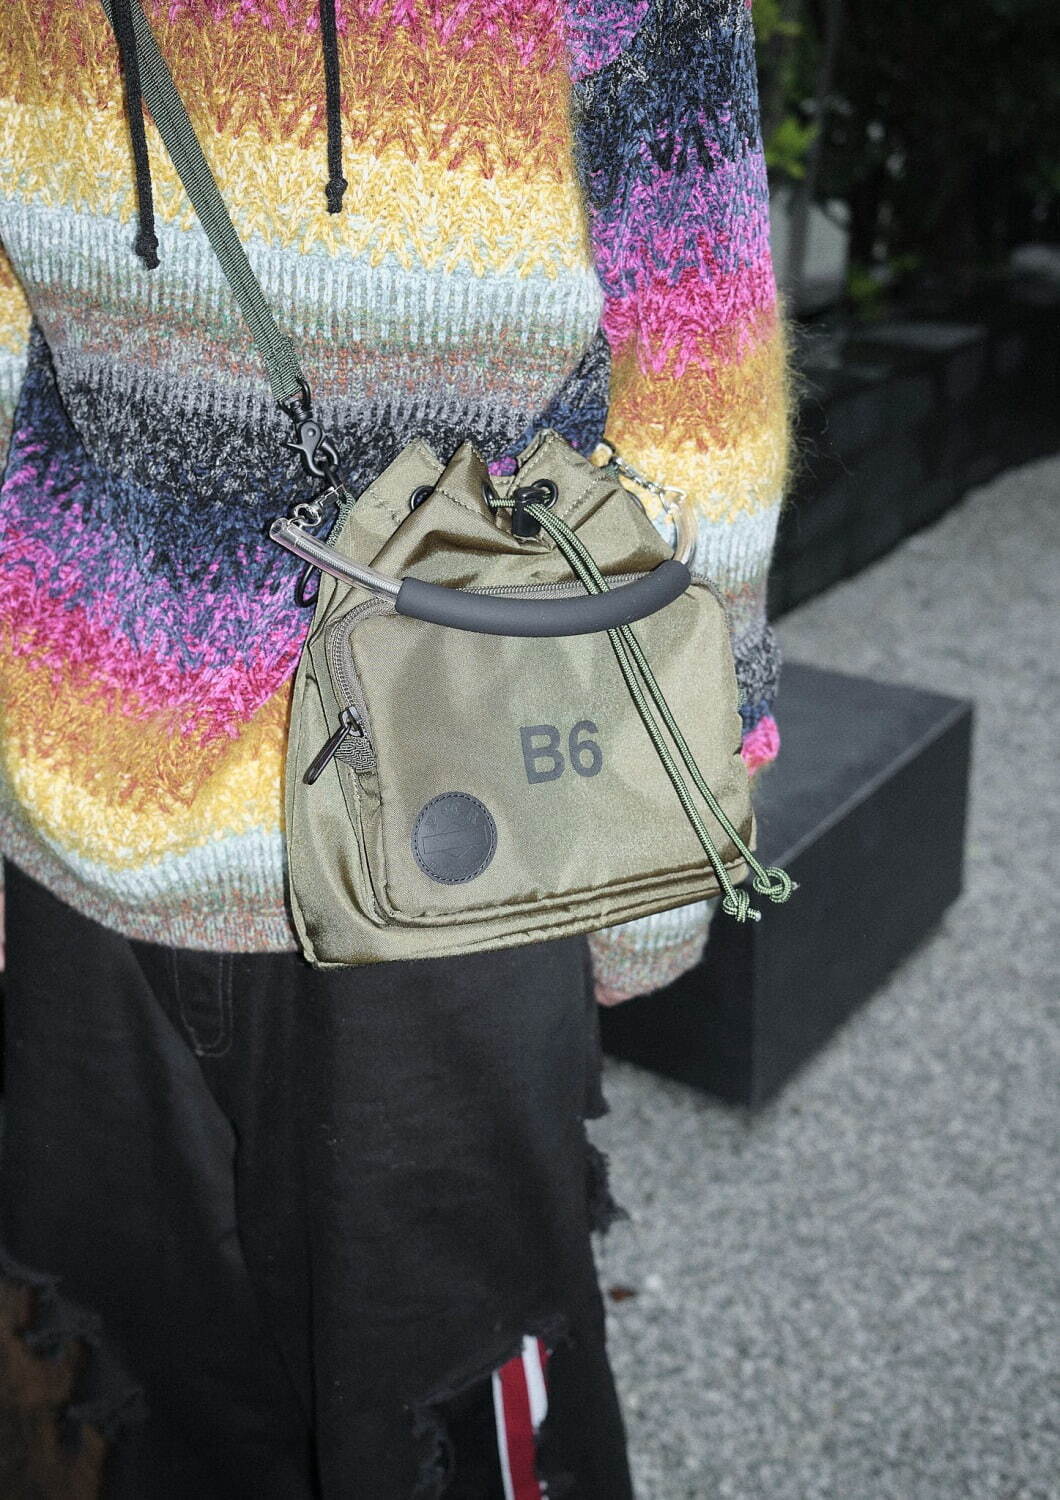 ナナナナ×POTR「B6」ポケット付き巾着型バッグ、縦型ペーパーサイズ